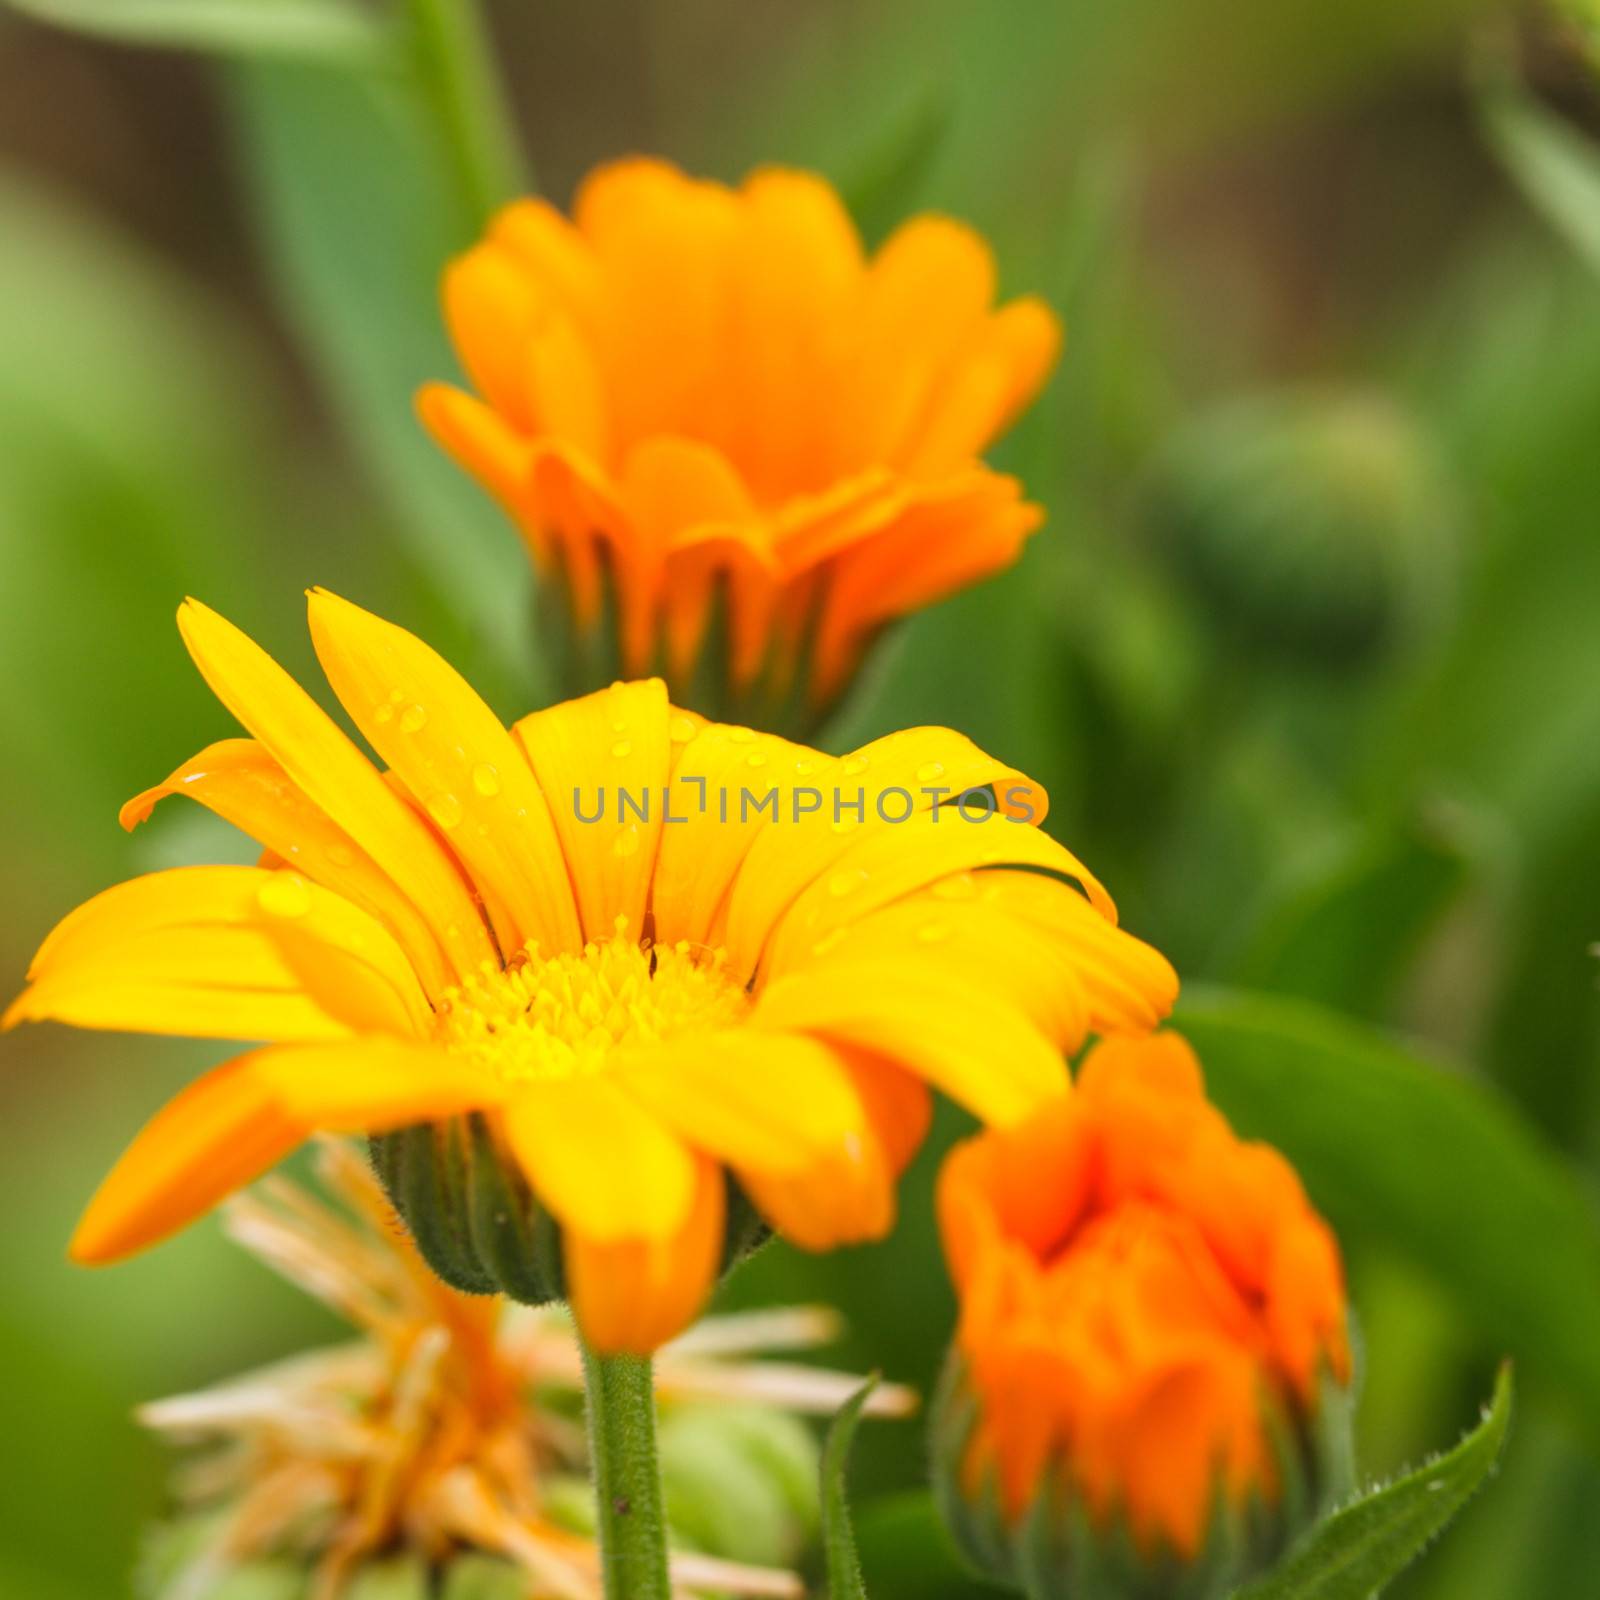 Orange calendula in the field close up